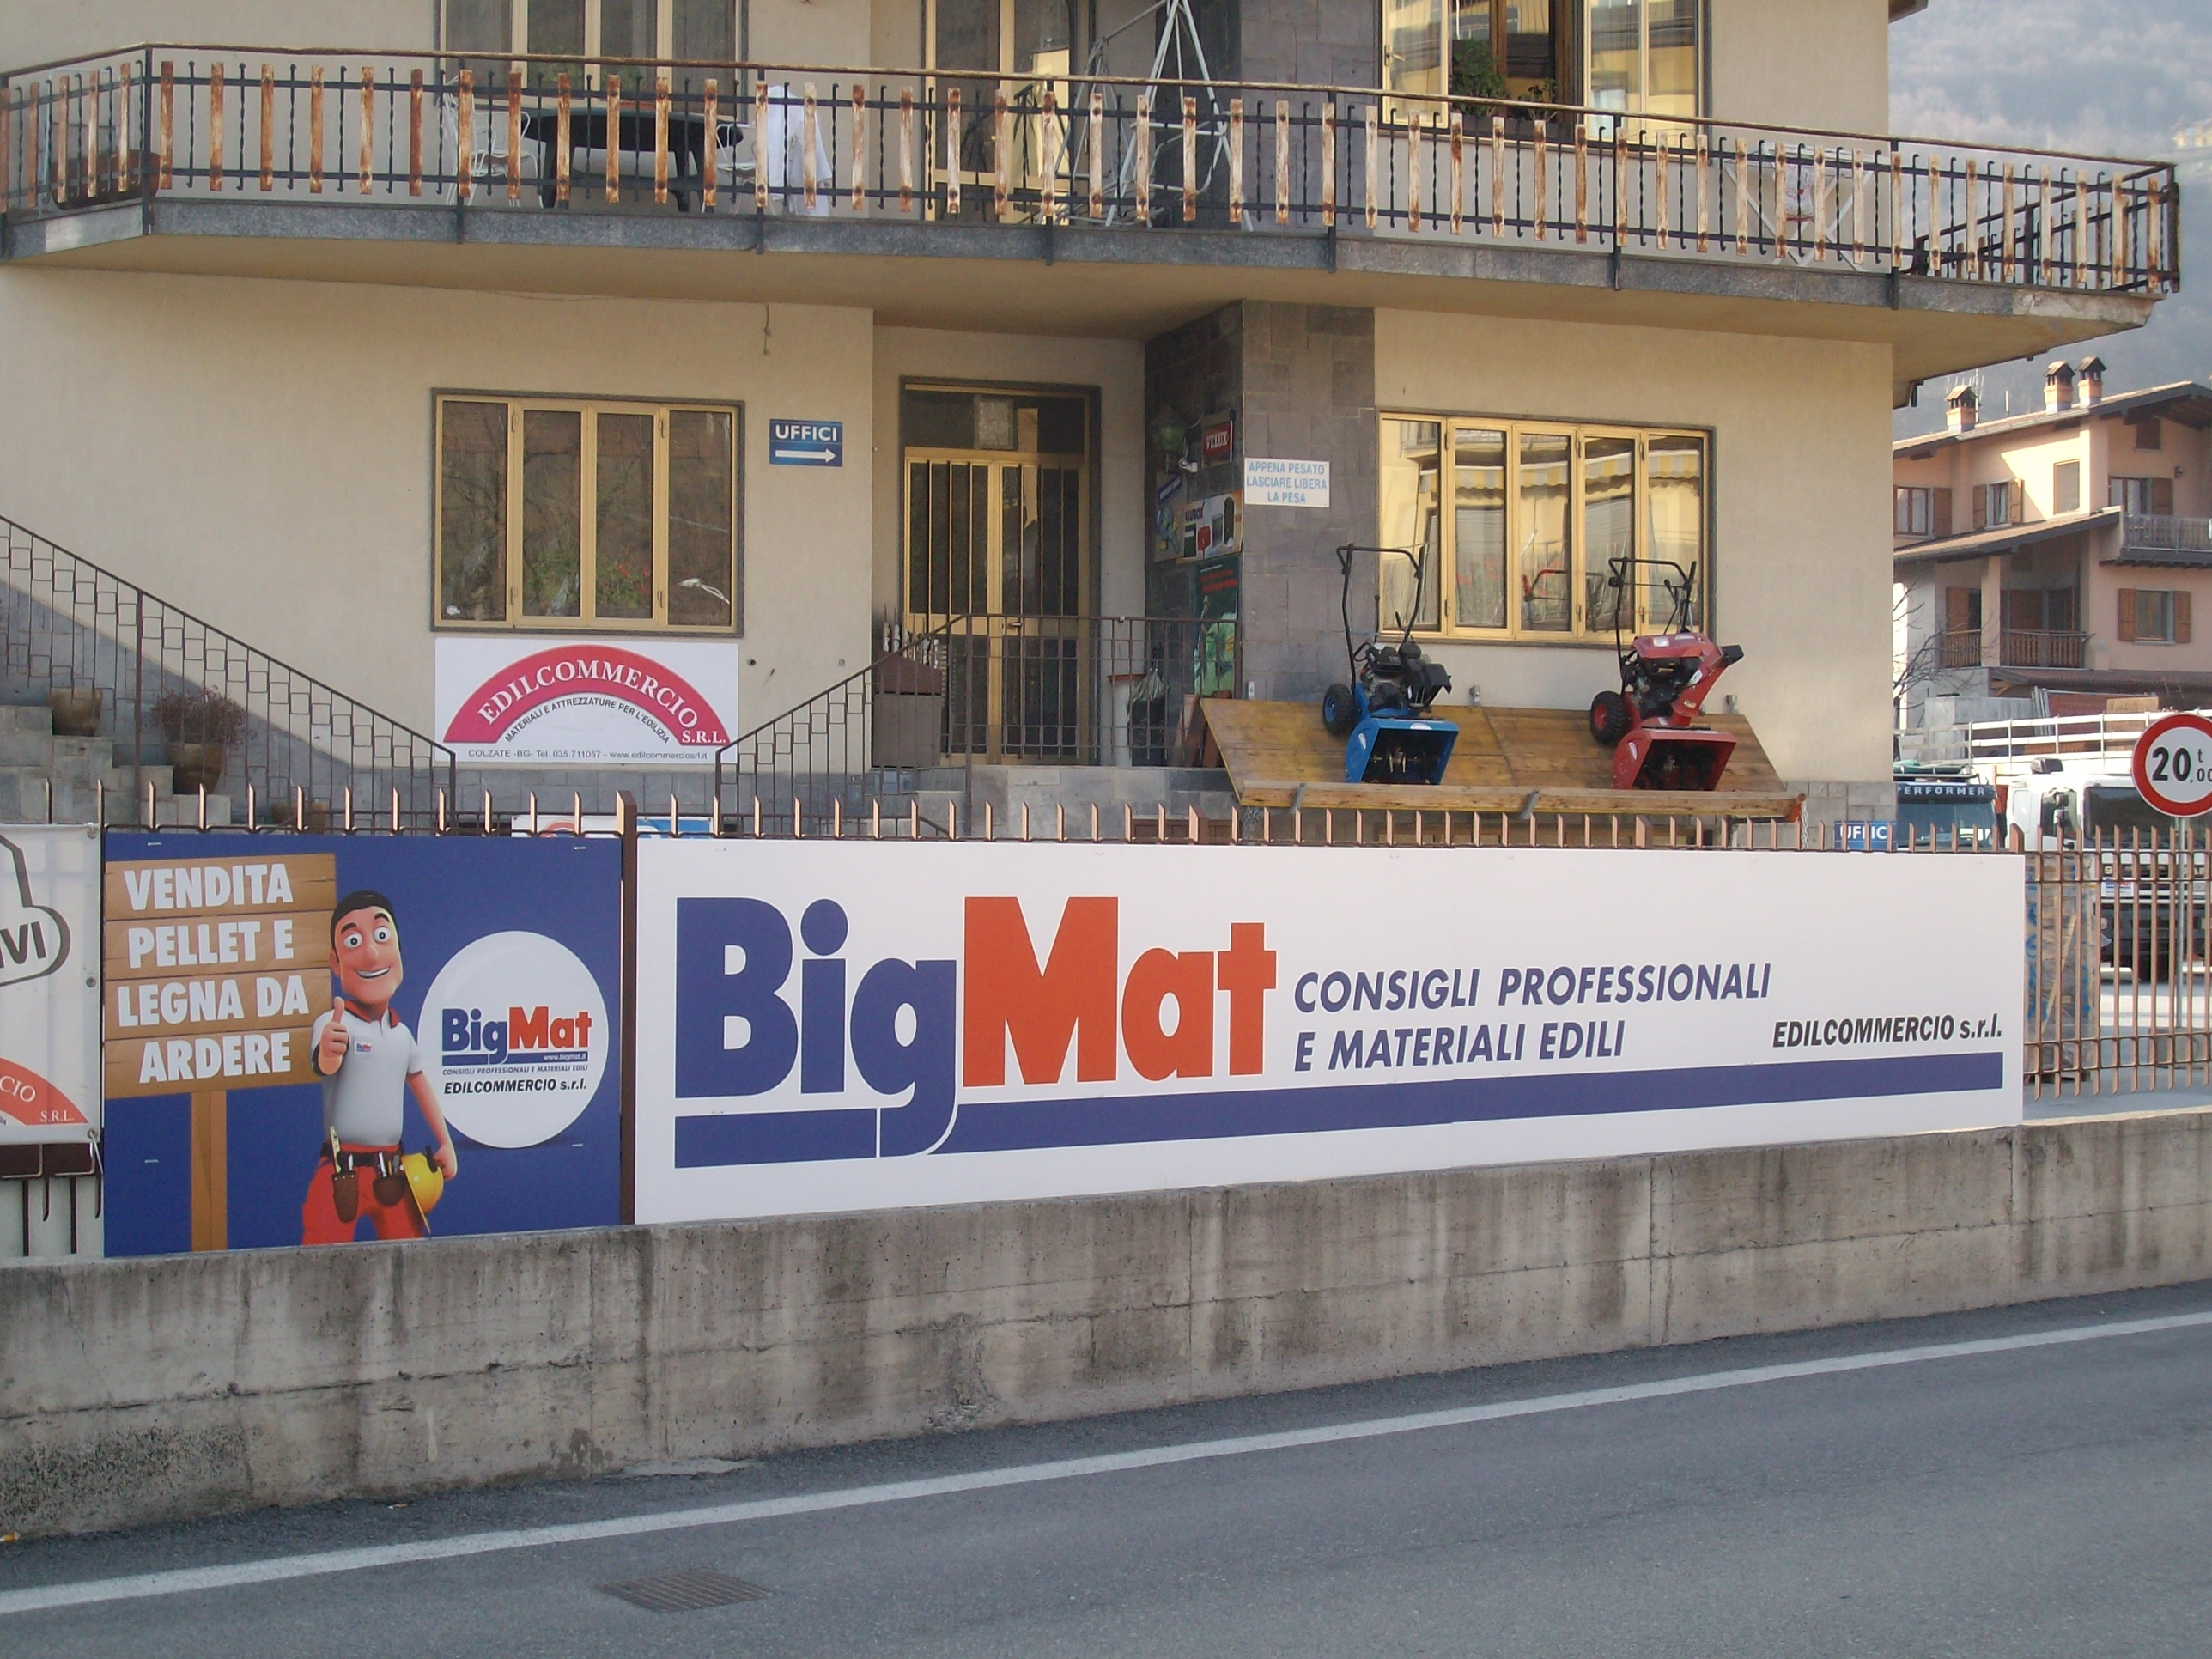 BigMat Edilcommercio Colzate Bergamo materiale costruzioni magazino edile